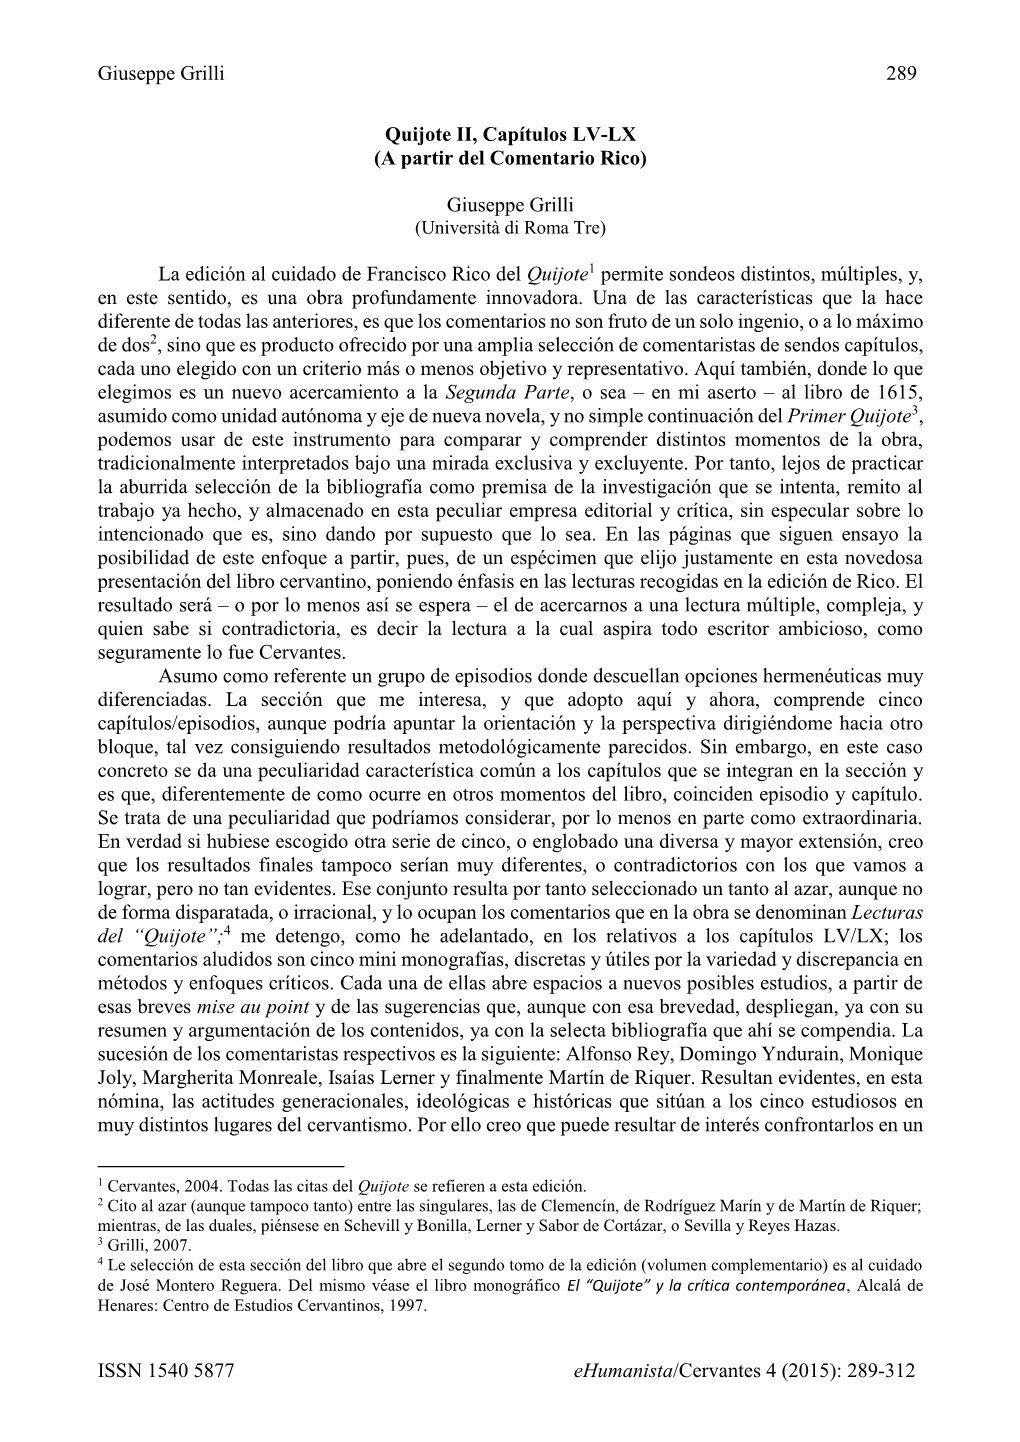 Giuseppe Grilli 289 ISSN 1540 5877 Ehumanista/Cervantes 4 (2015)